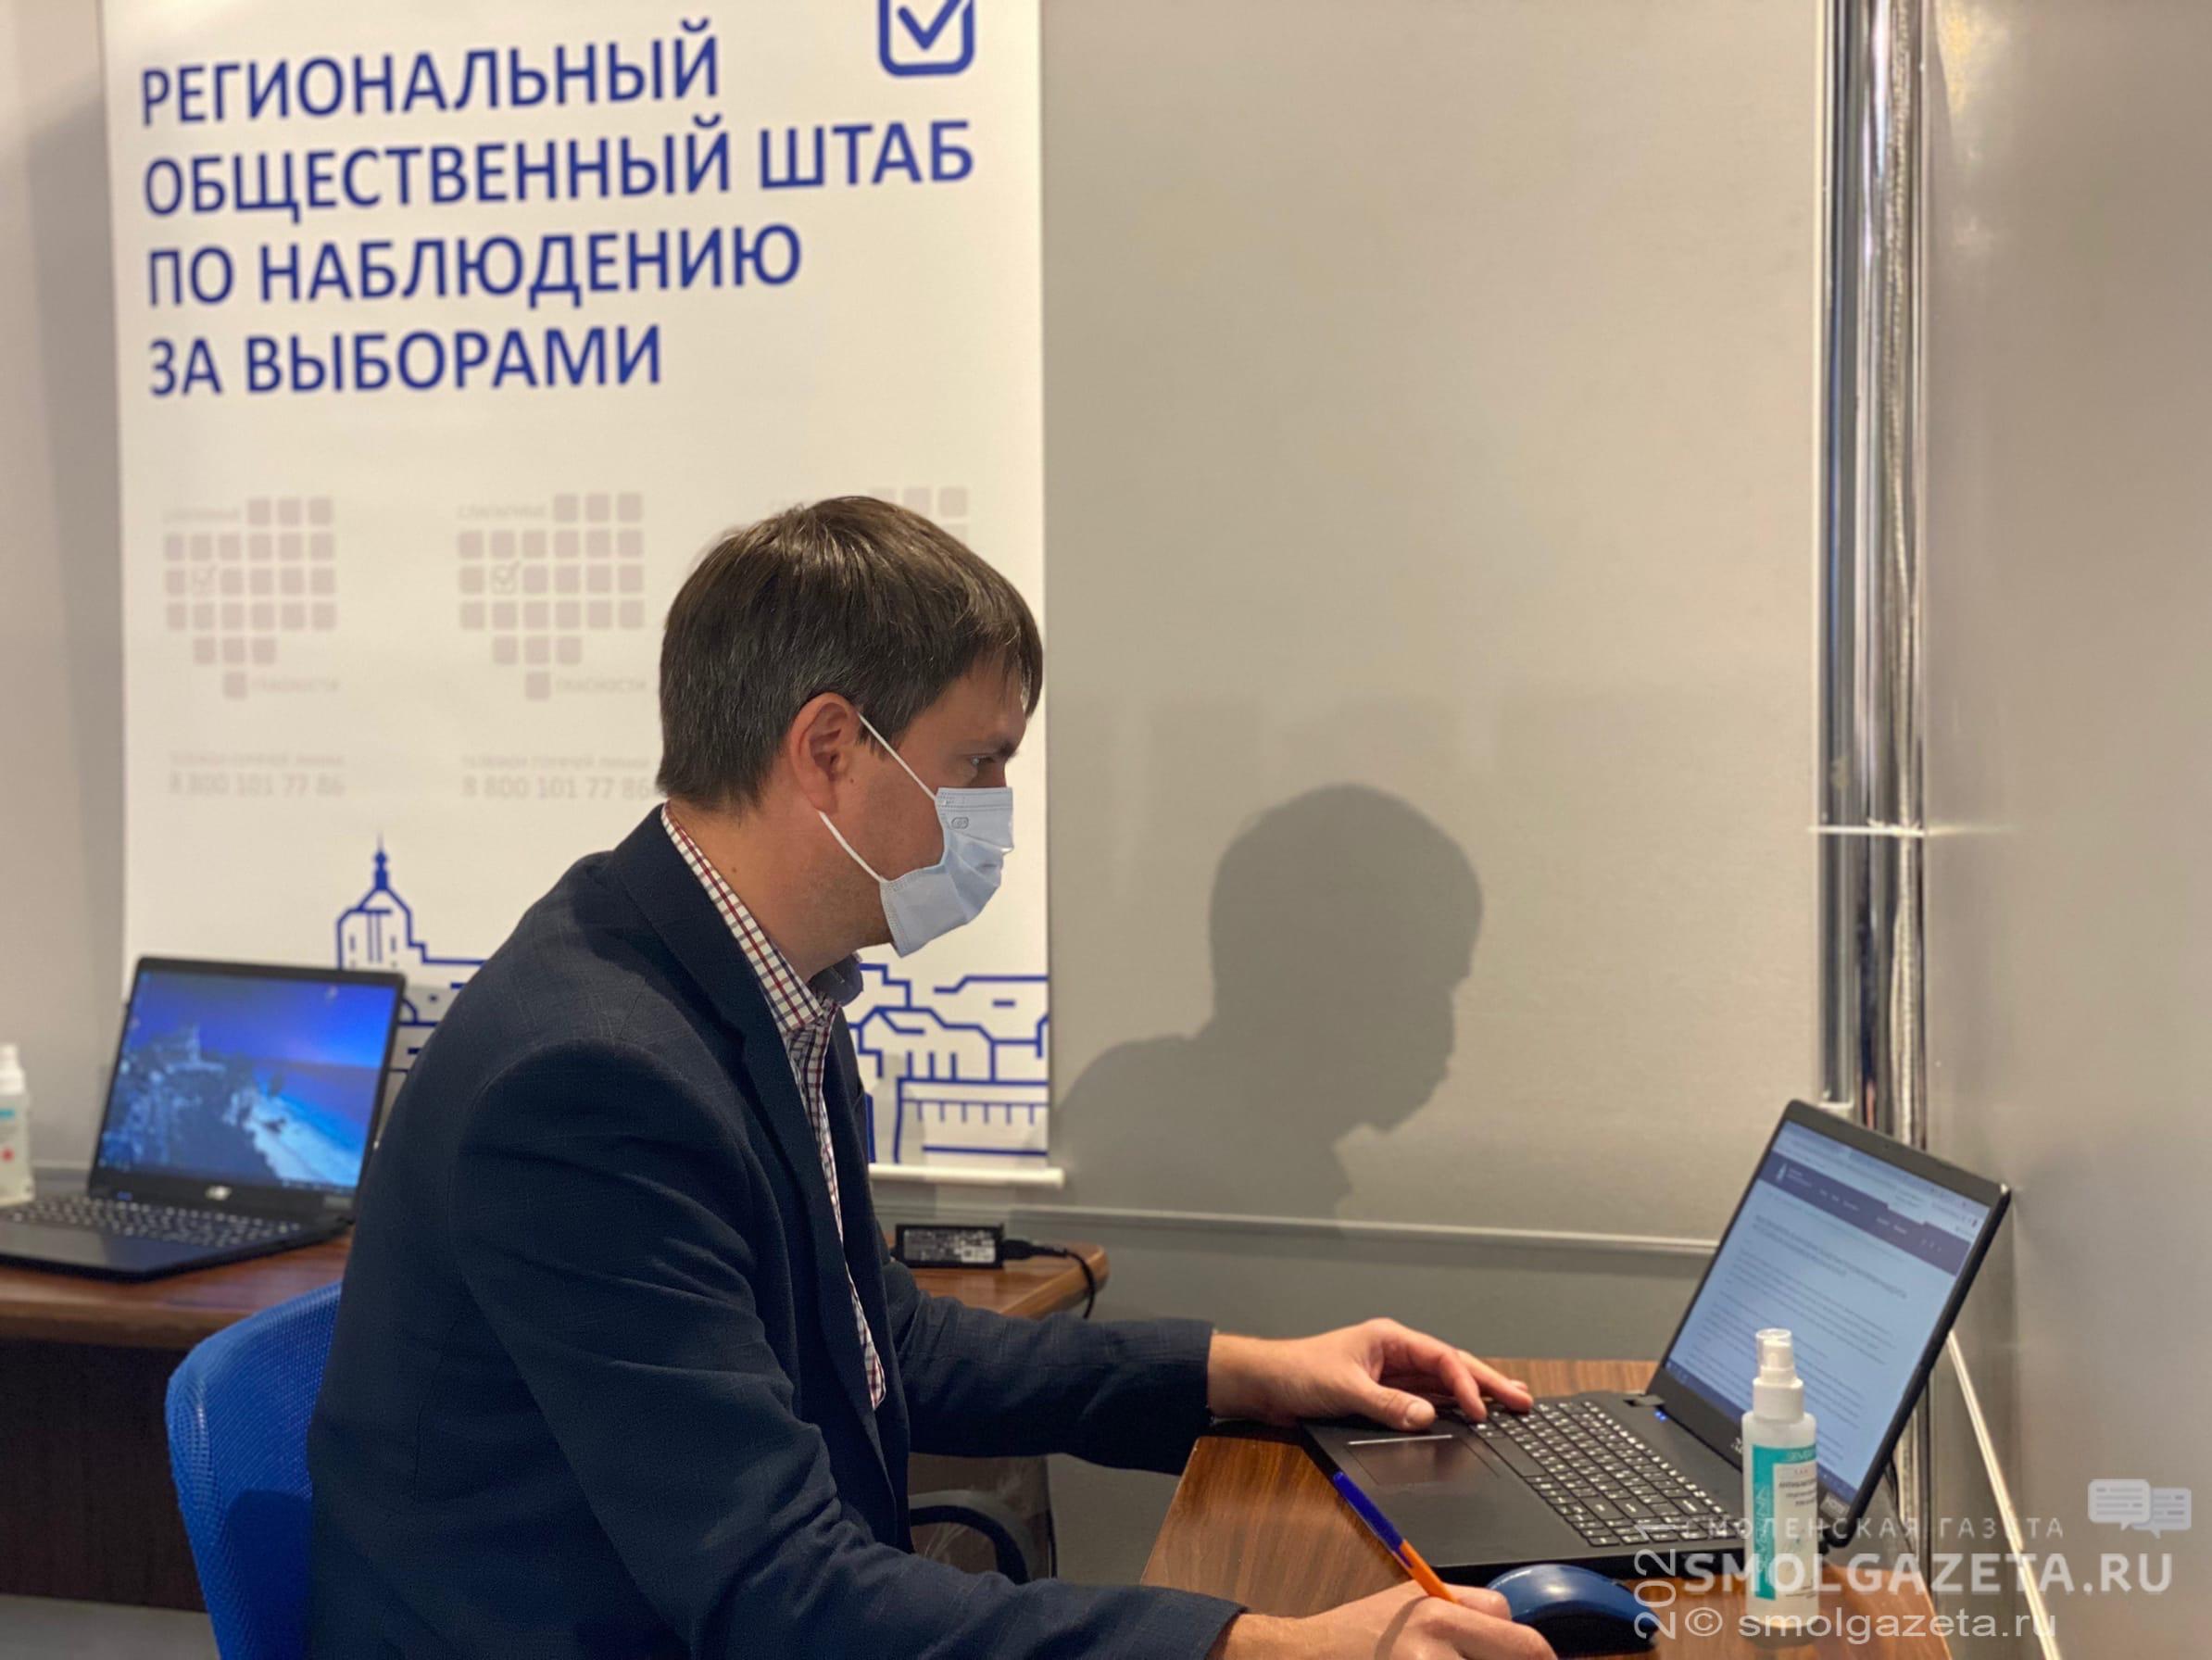 Денис Пестунов - об организации работы Центра видеонаблюдения во второй день выборов